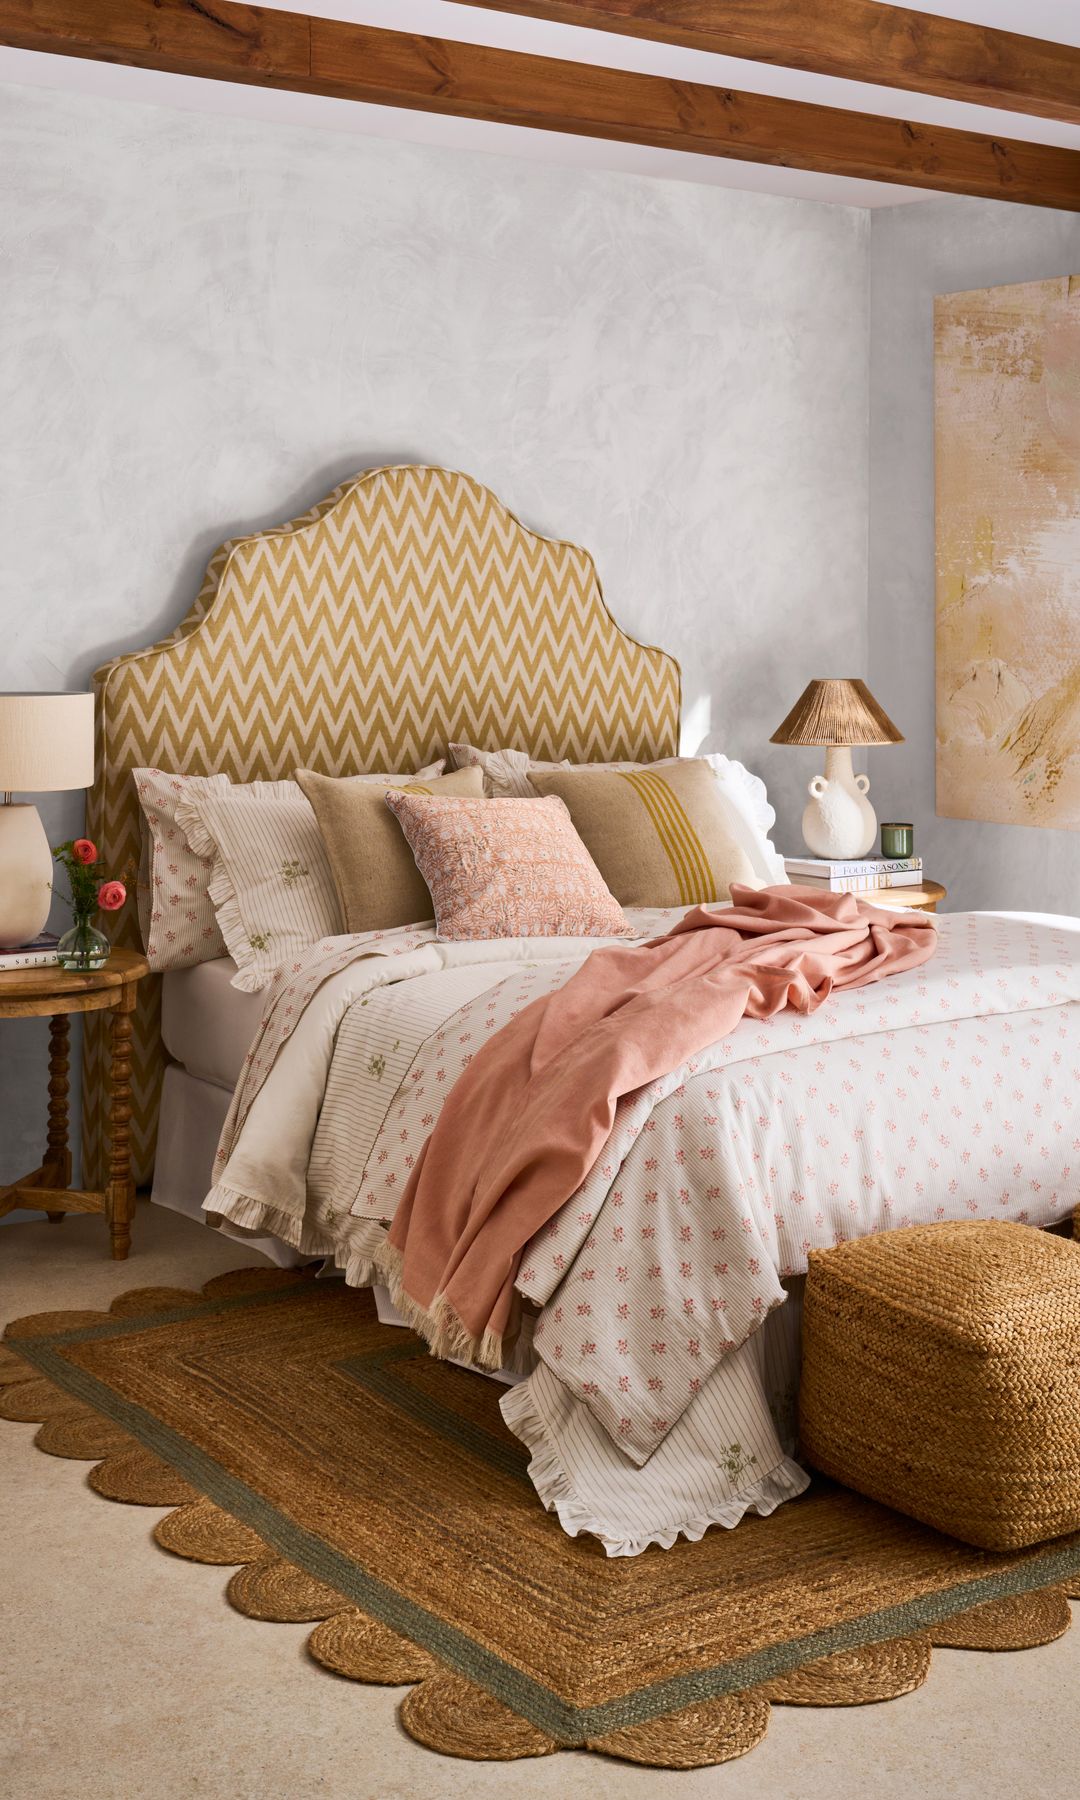 Dormitorio decorado con textiles de verano